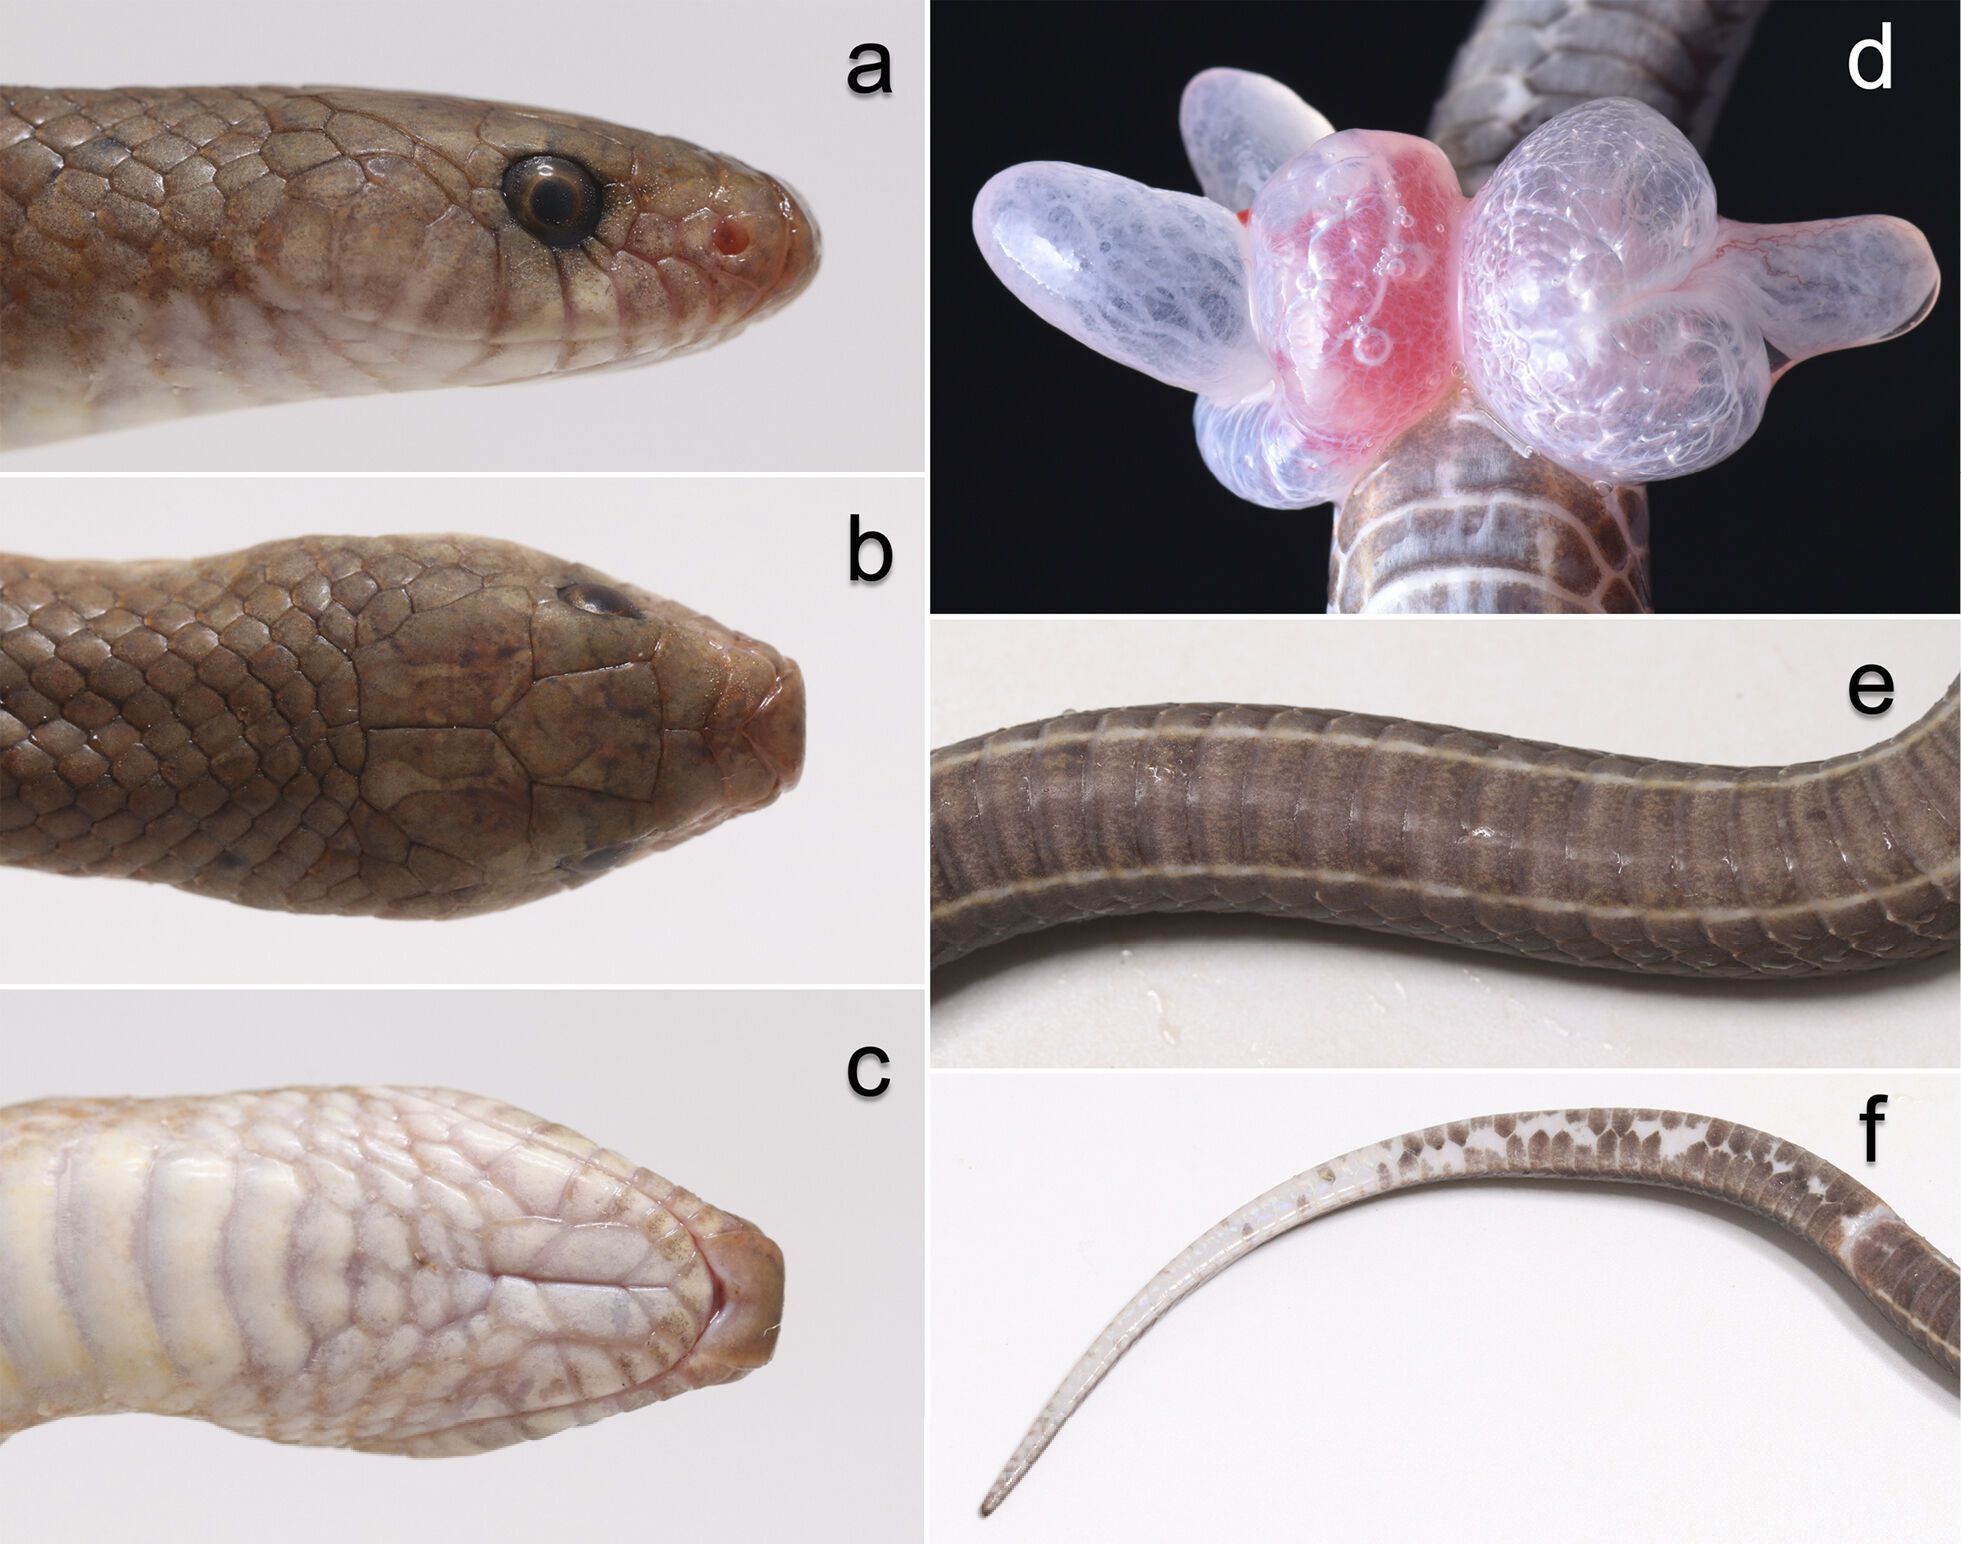 Новый вид змей обнаружили в Таиланде: имеют клыки, похожие на лезвия (фото)